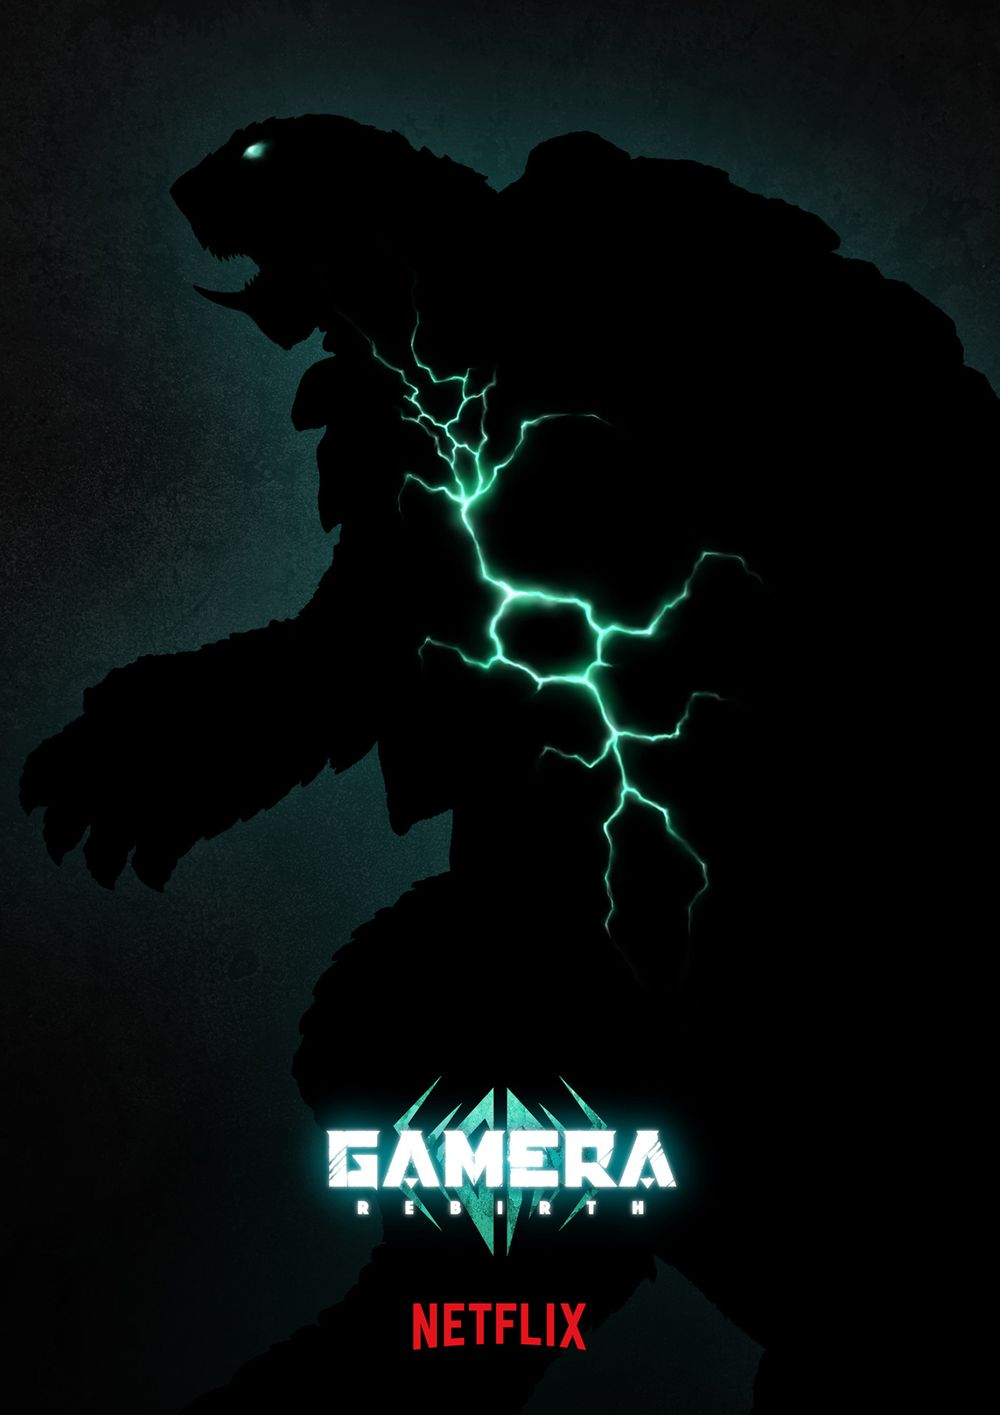 卡美拉巨兽复活！Netflix 宣布推出《GAMERA -Rebirth-》并释出特报影像插图